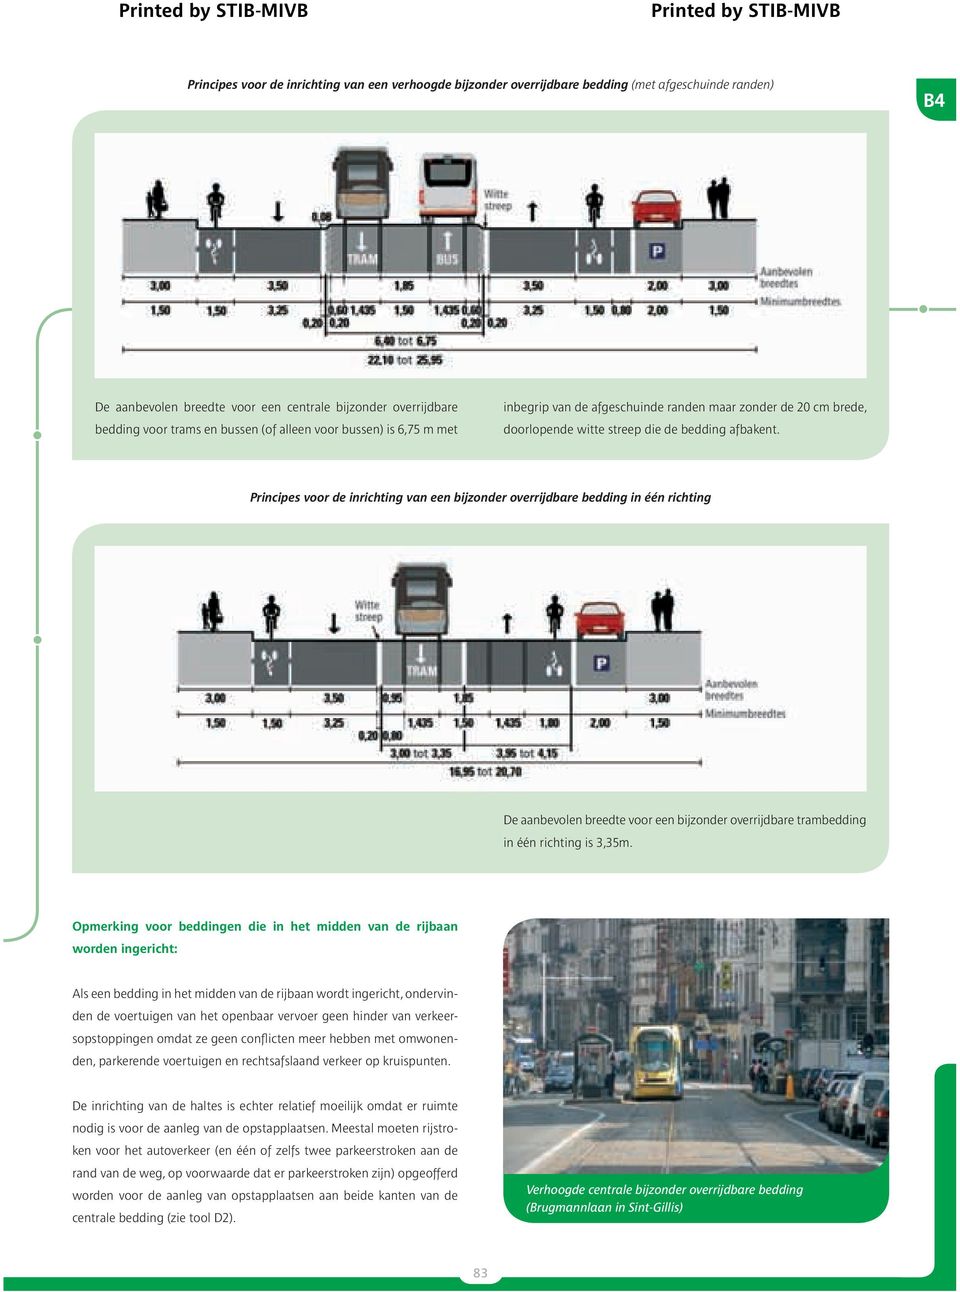 Principes voor de inrichting van een bijzonder overrijdbare bedding in één richting De aanbevolen breedte voor een bijzonder overrijdbare trambedding in één richting is 3,35m.